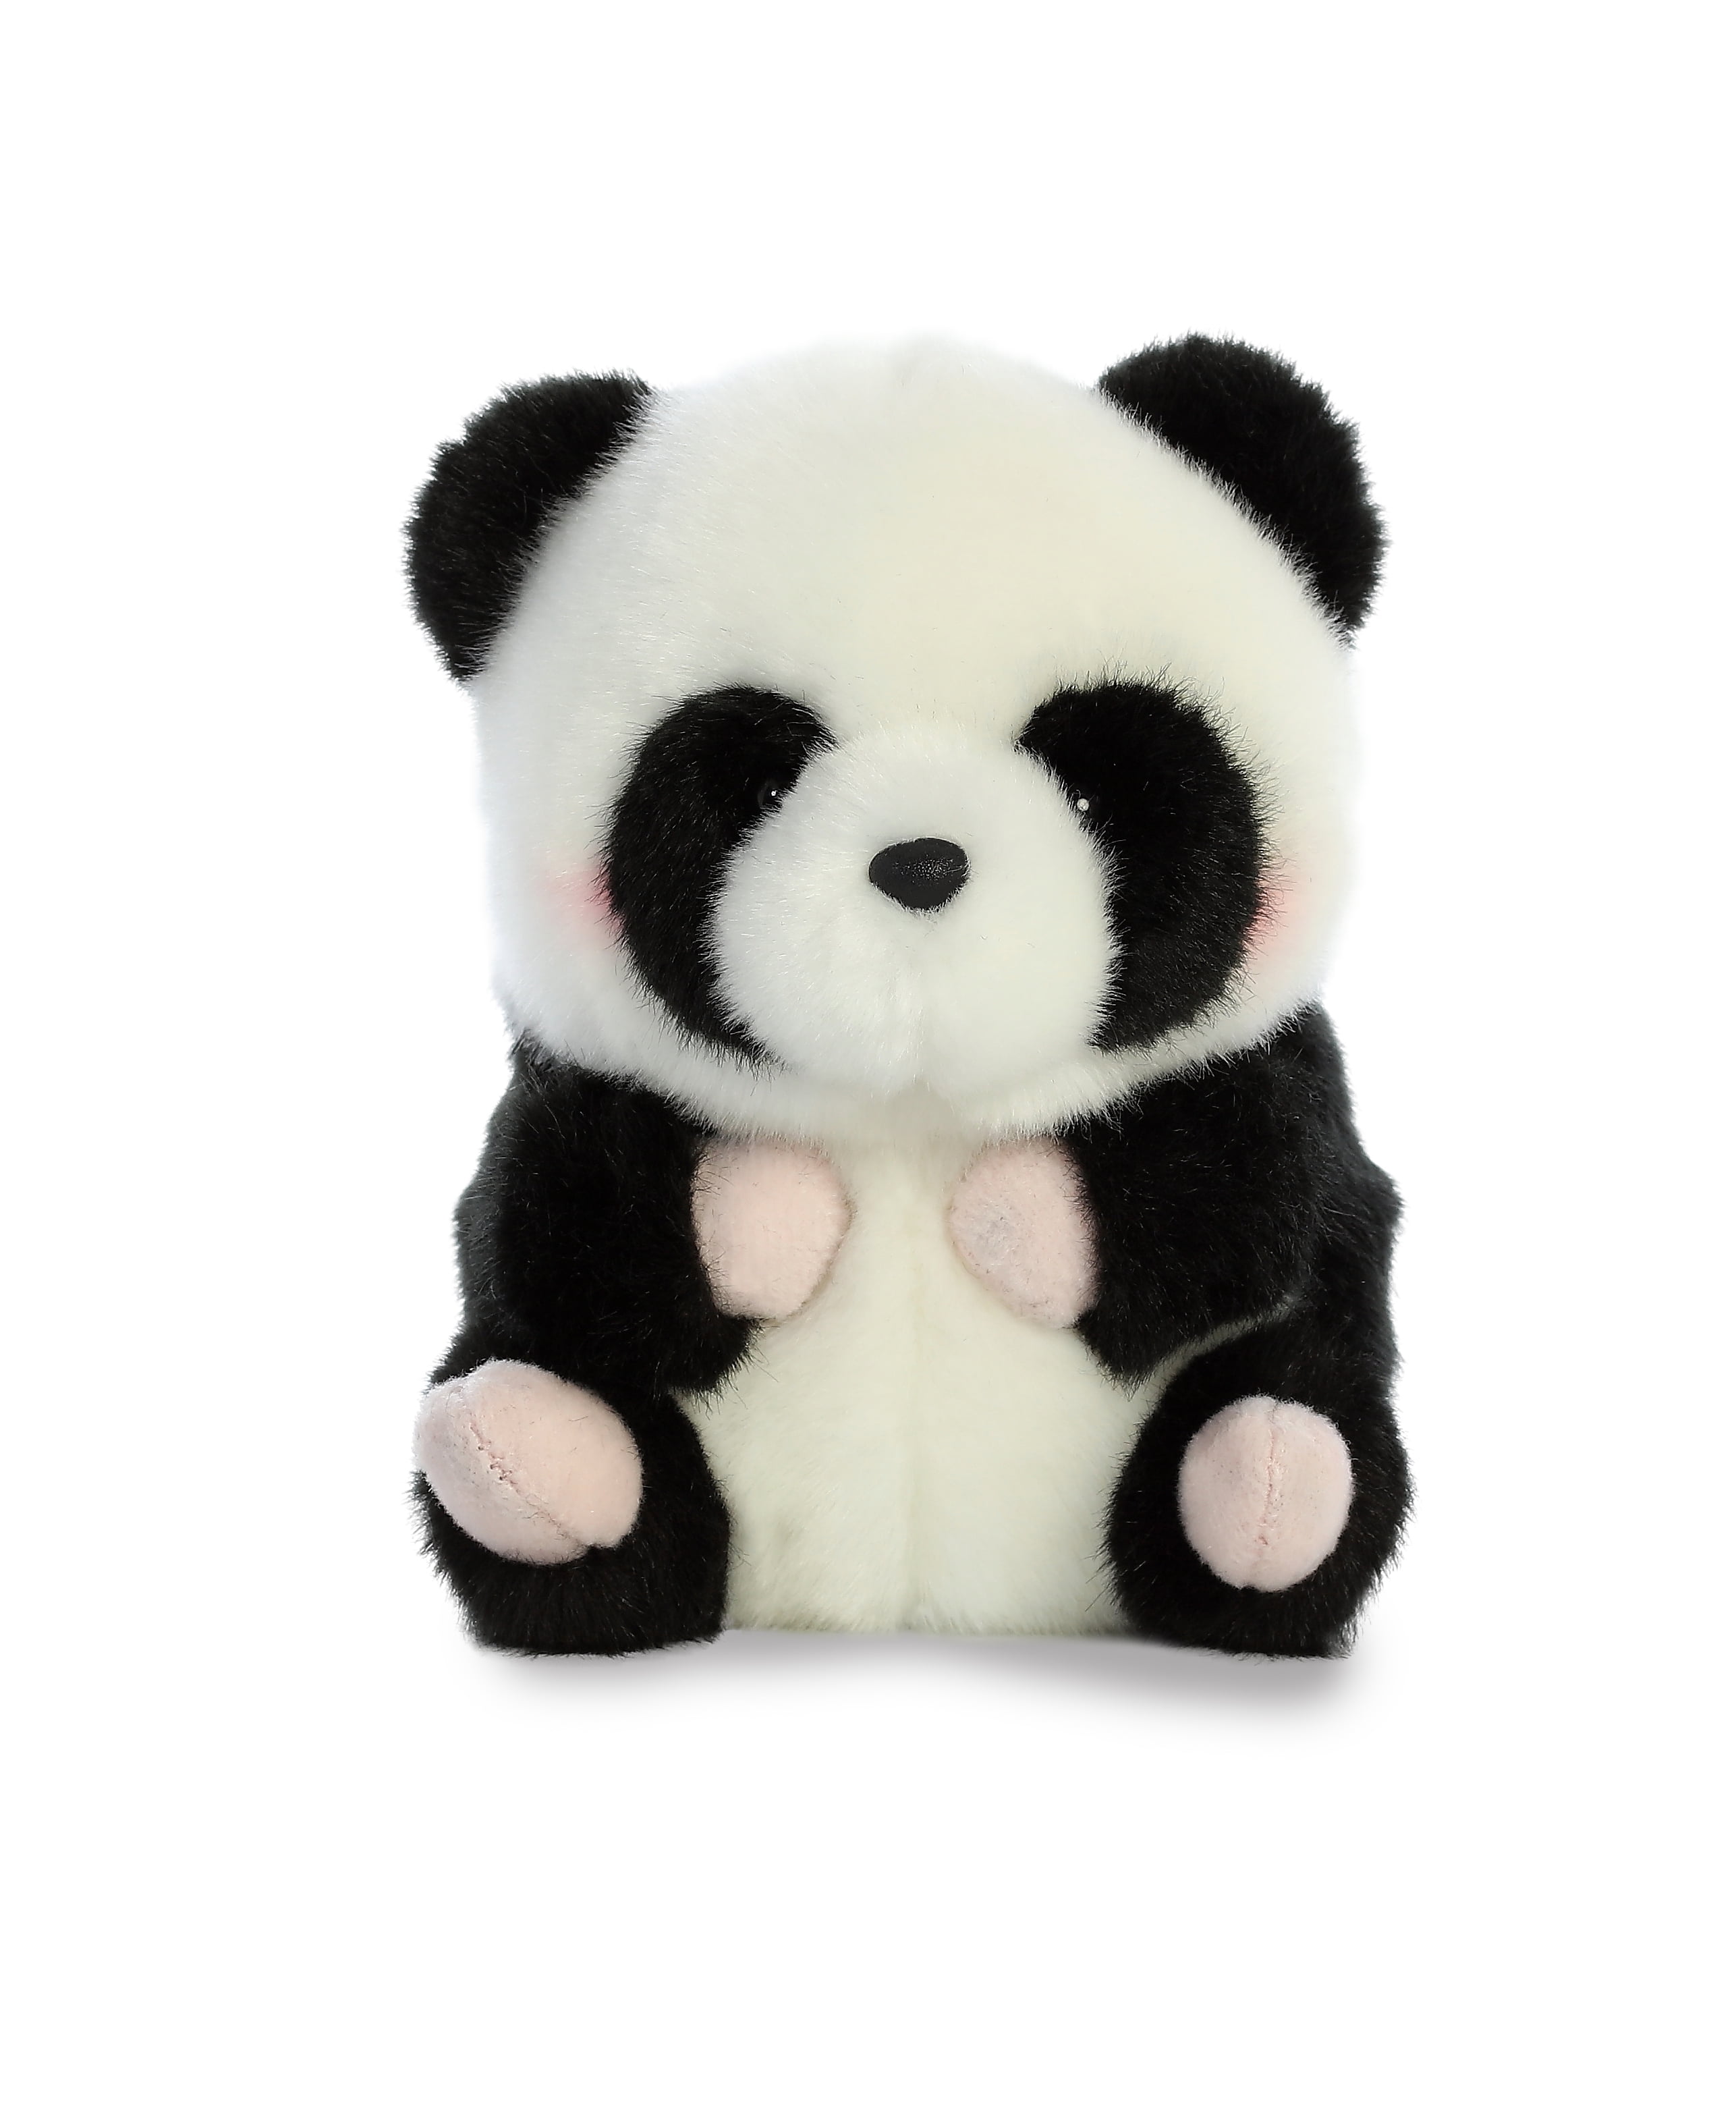 11" Tall PANDA BEAR Stuffed Animal Plush by Aurora 